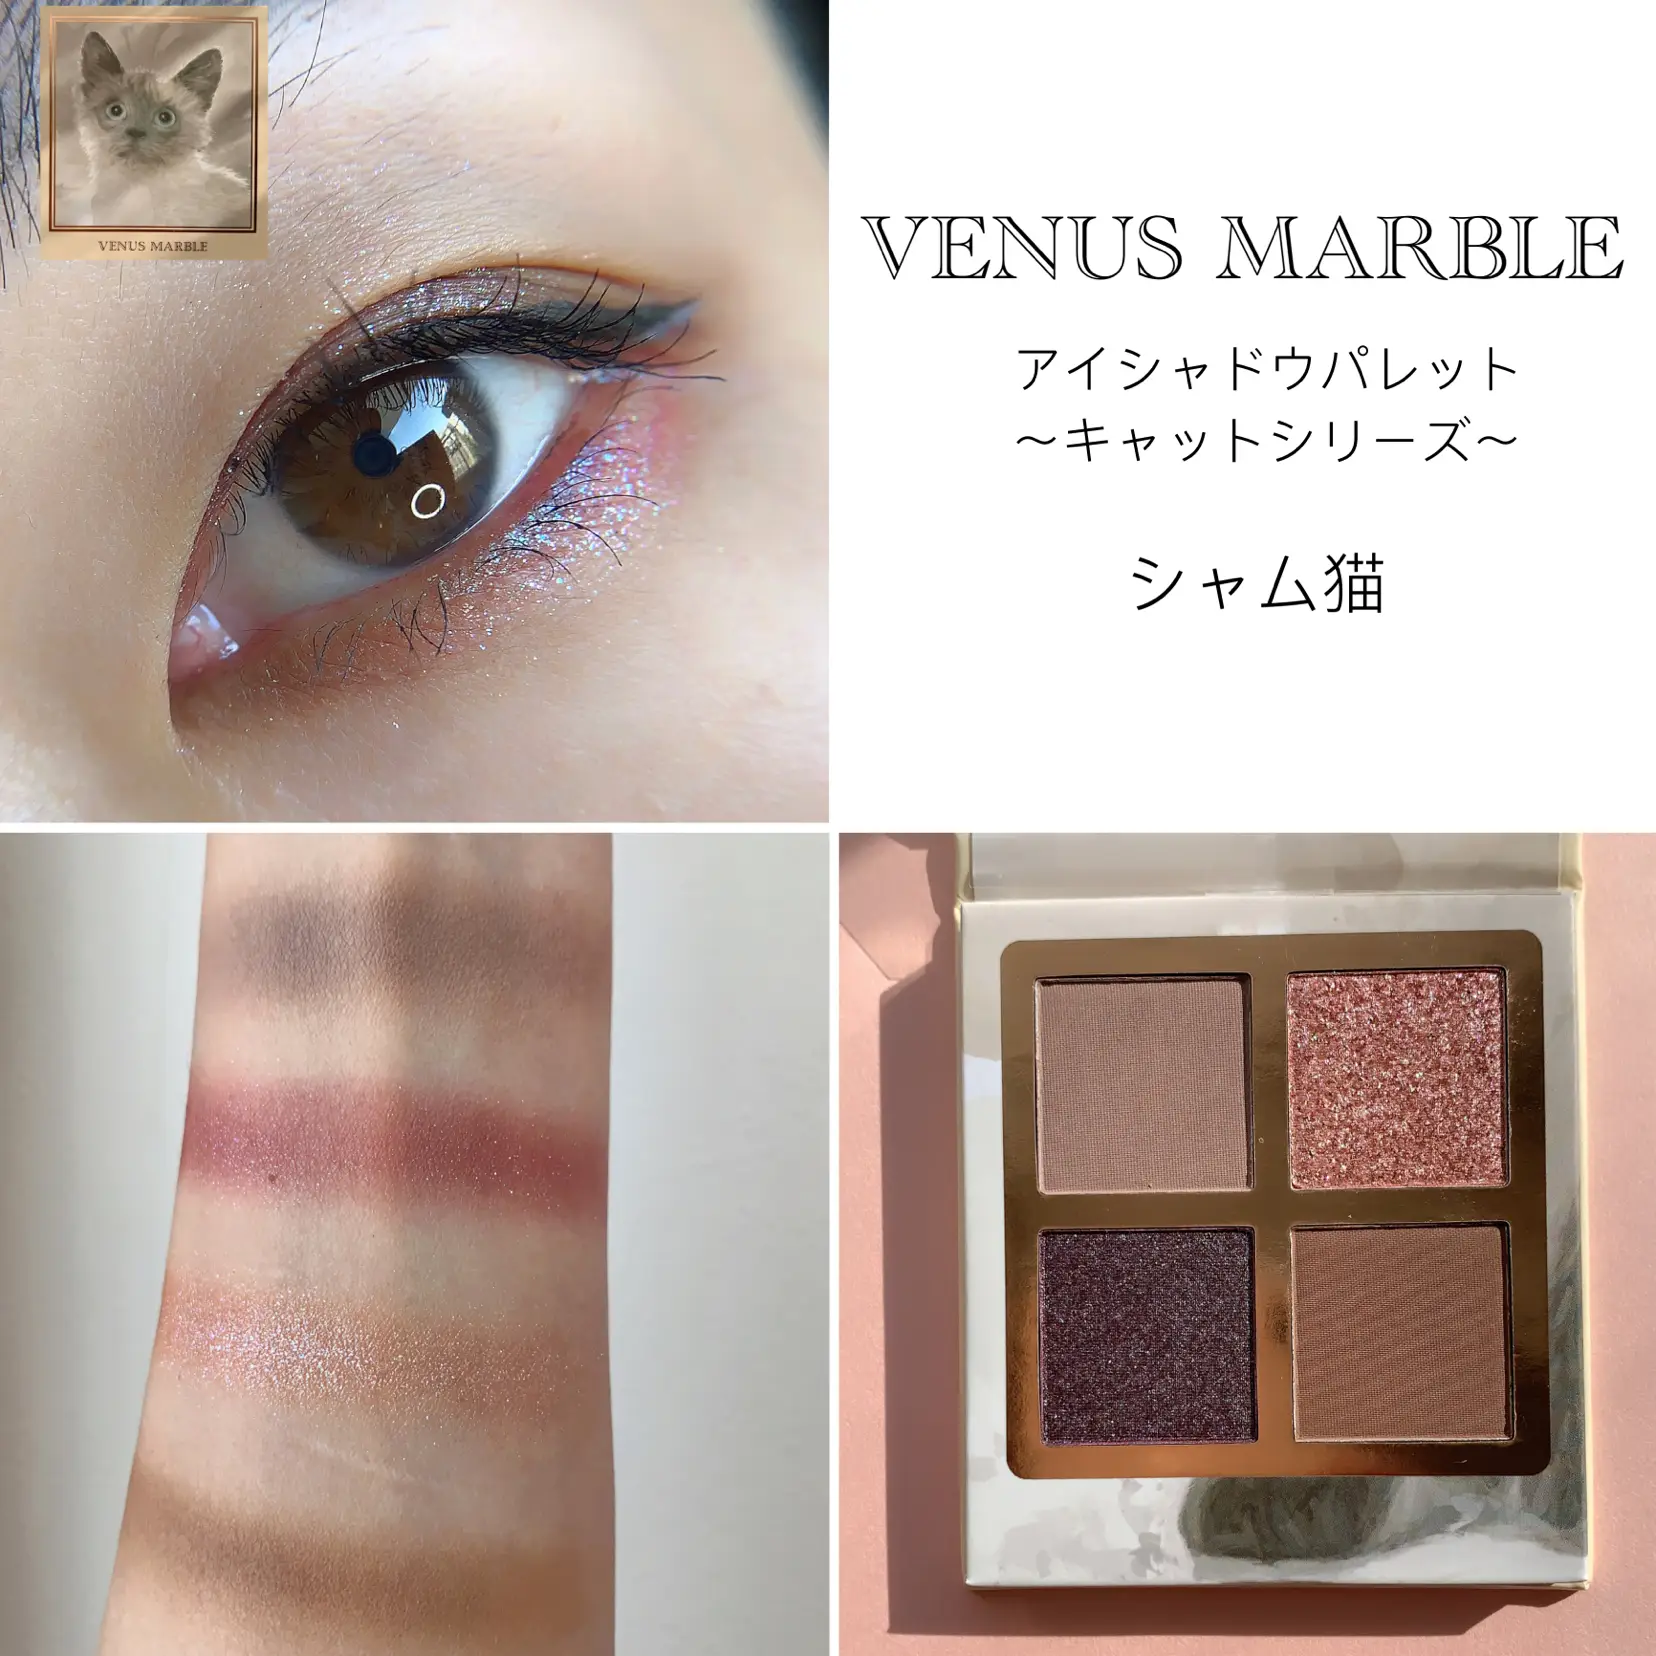 コスメ/美容× SOLD OUT × Venus Marble ♡ 猫ﾊﾟﾚｯﾄｾｯﾄ ...